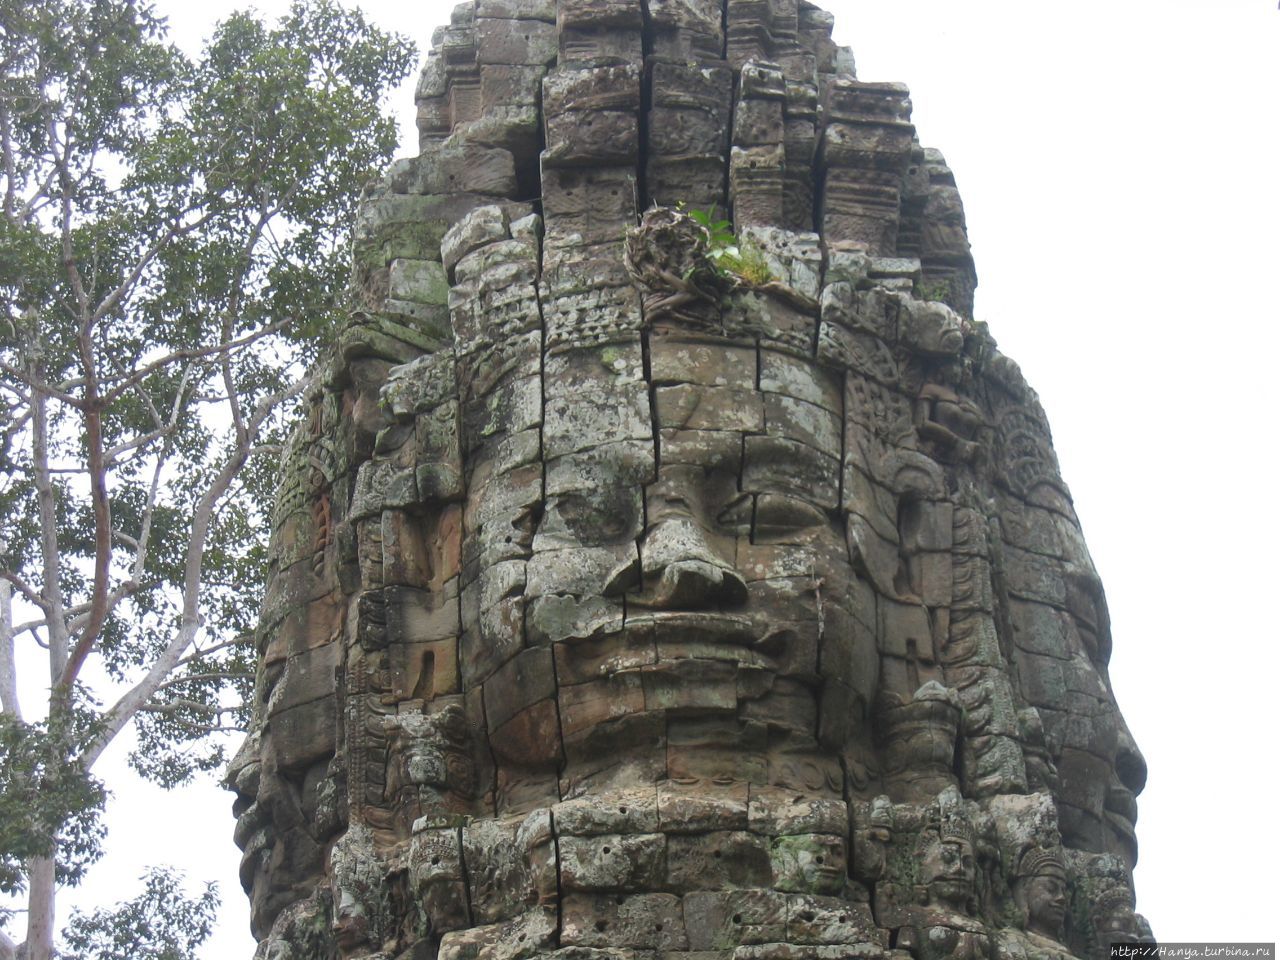 Лик Локешвара — Бодхисаттвы, представляющий сострадание Будды на воротах-гопурах в храме Та Пром Ангкор (столица государства кхмеров), Камбоджа